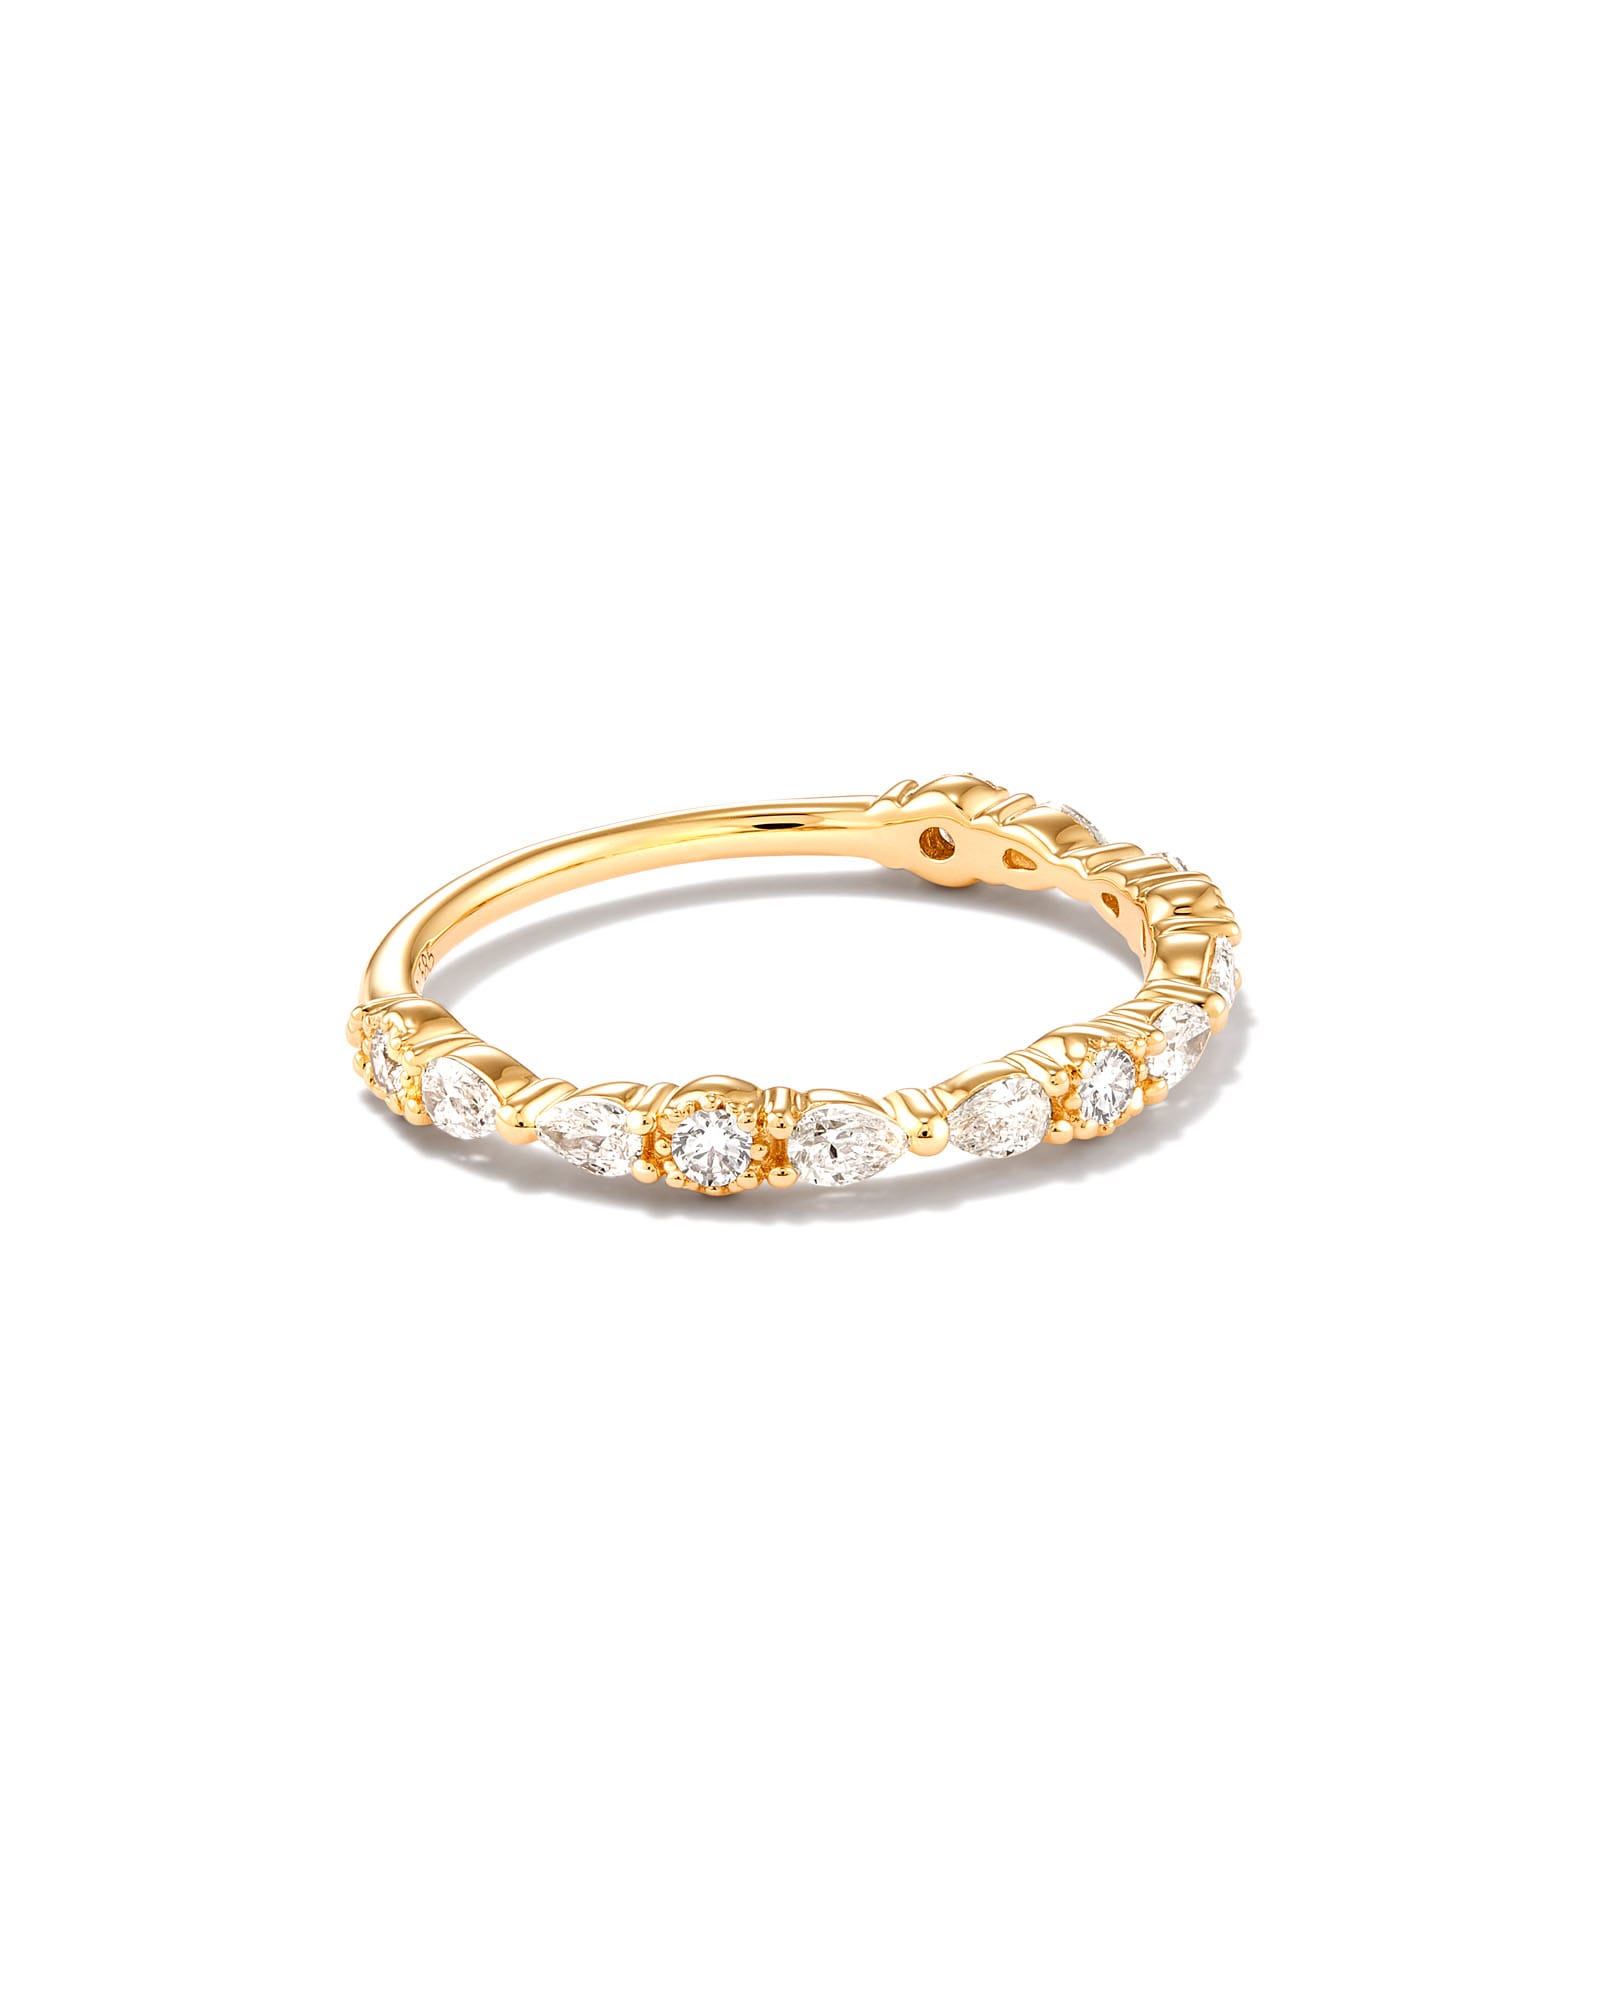 Kendra Scott Melanie 14k Yellow Gold Band Ring in White Diamond | Diamonds